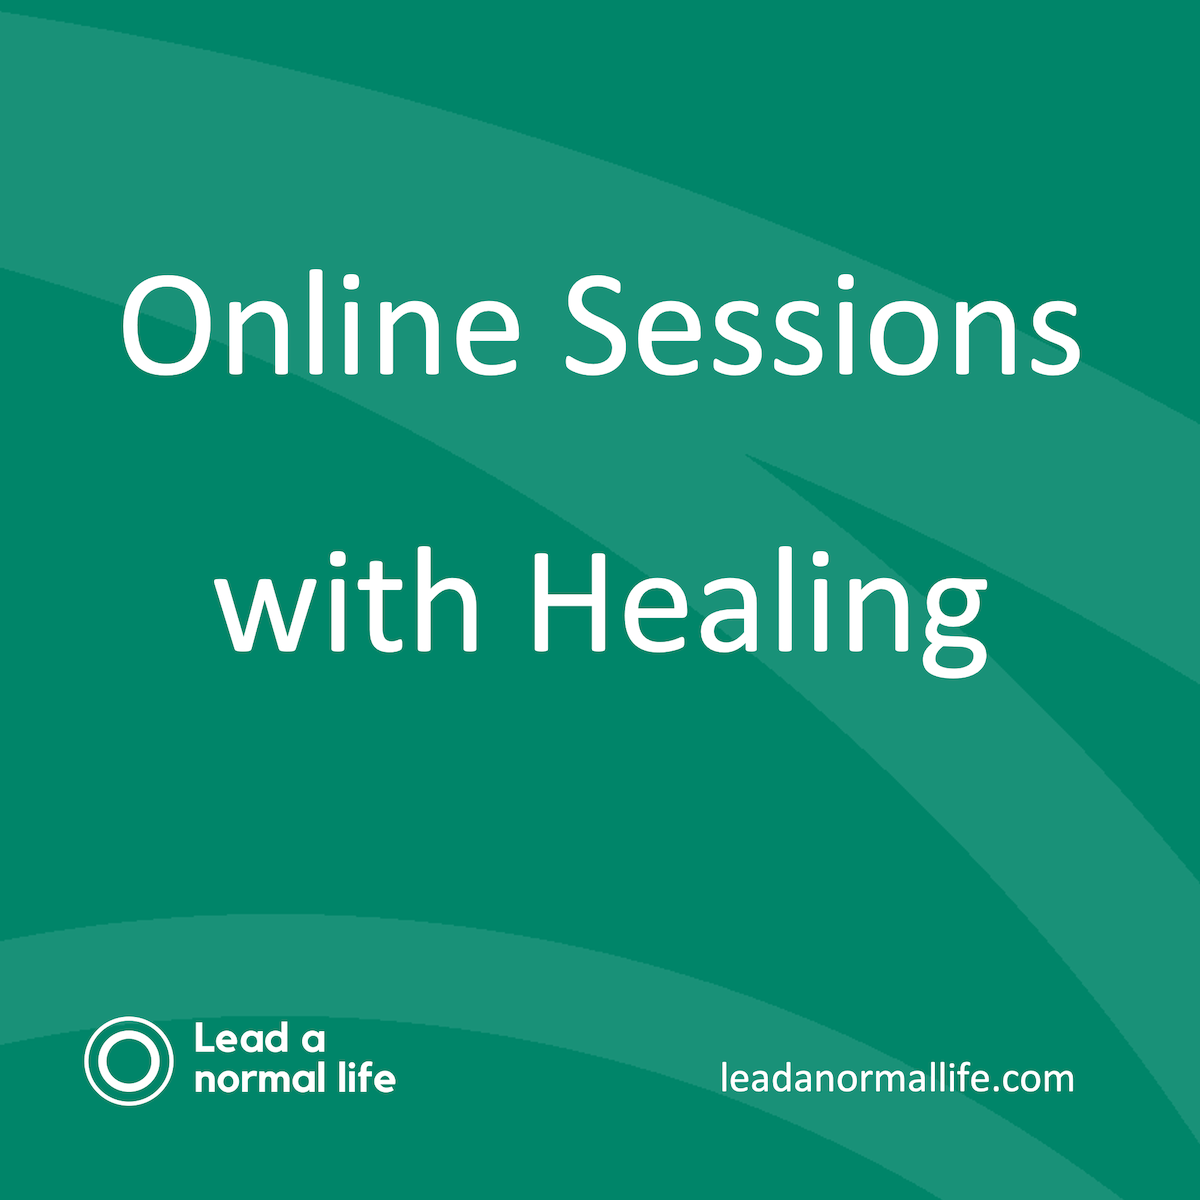 Online sessie inclusief healing | Diverse thema\s | Anoniem volgen wanneer het jou uitkomt | Lead a normal life